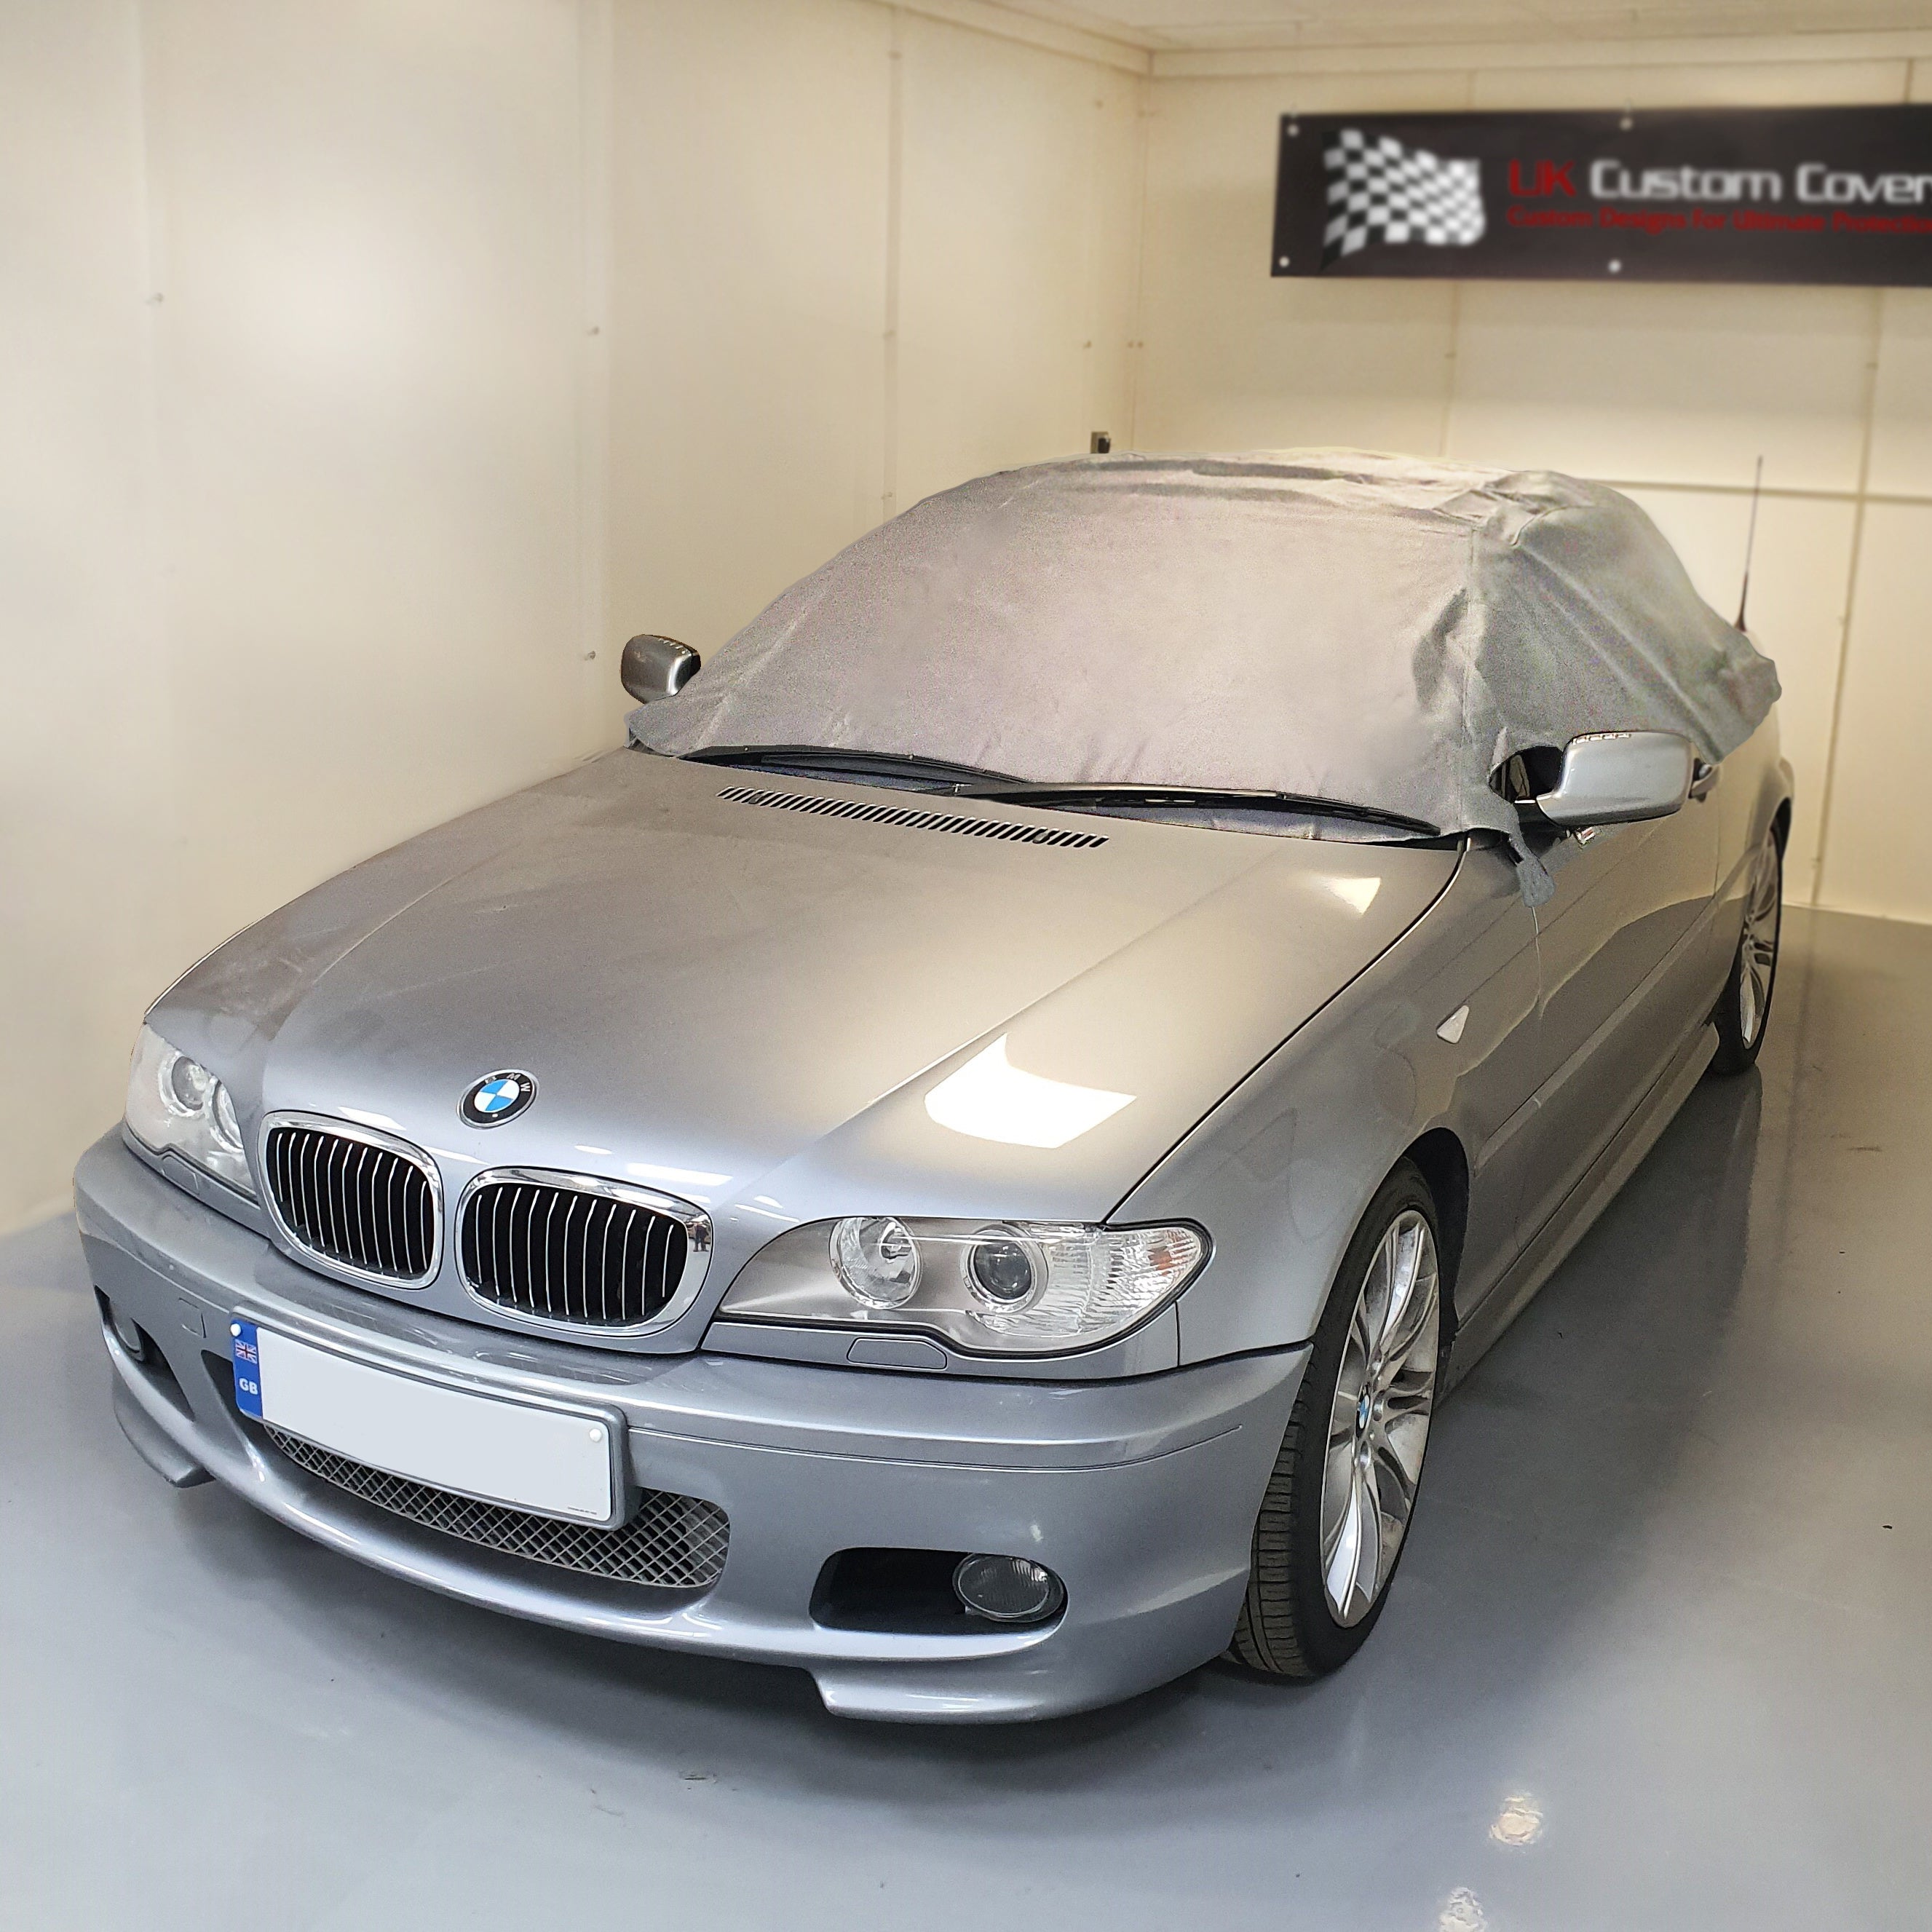 Media cubierta de techo blando para BMW E46 - 1999 a 2005 (571G) - GRIS